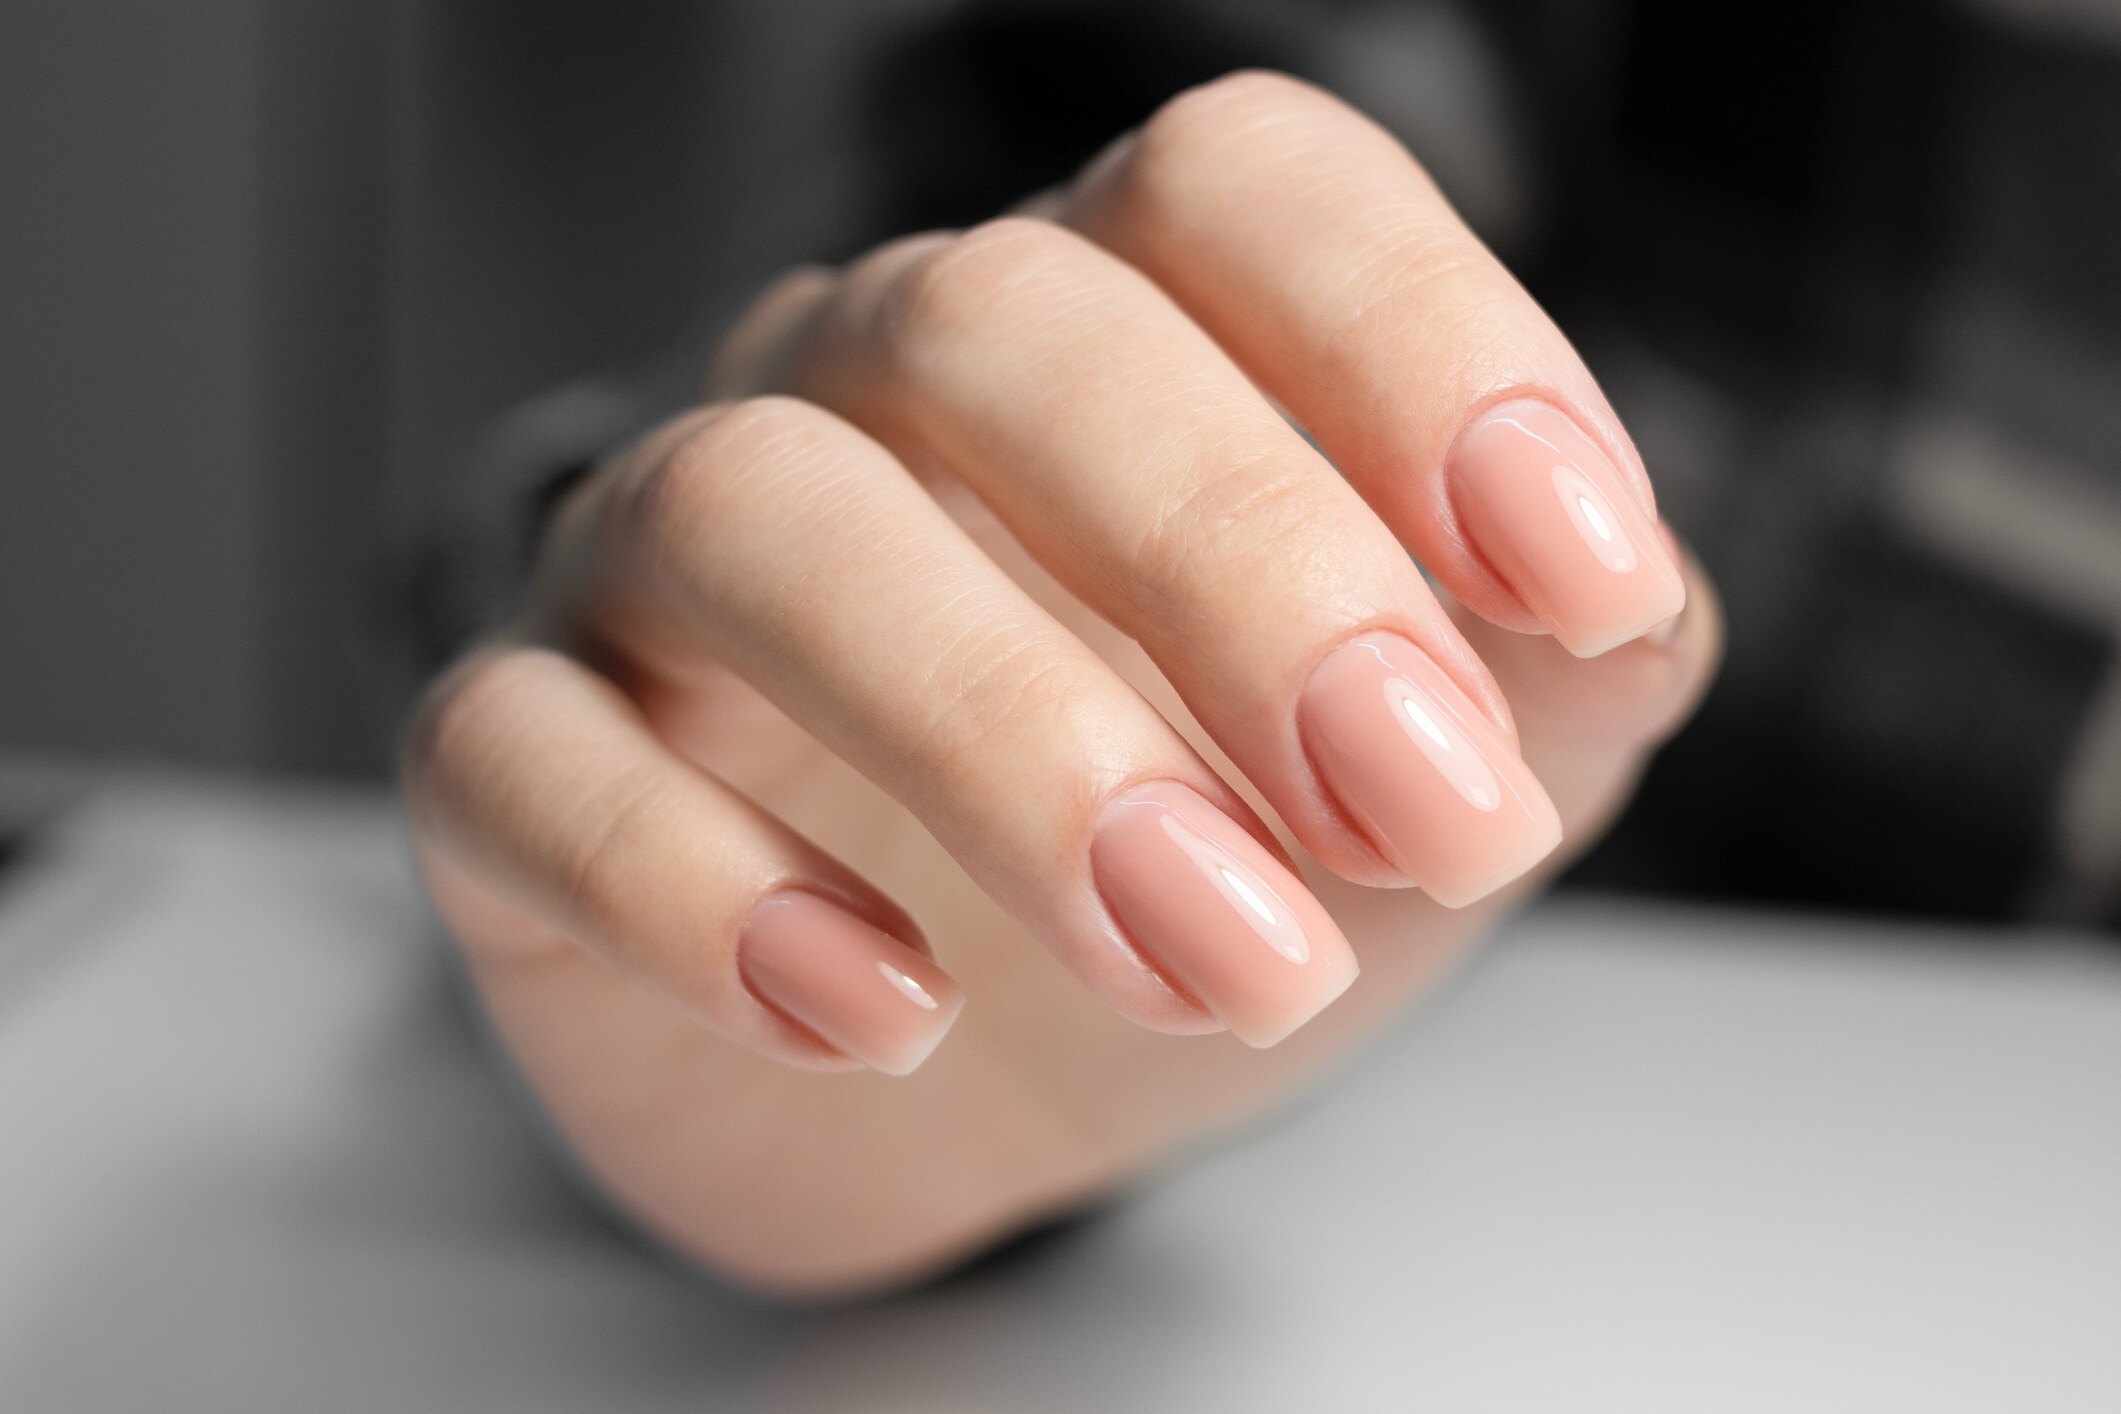 建議消費者每隔2至3個月，便停止gel甲一段時間，讓指甲休息，保養指甲的健康。